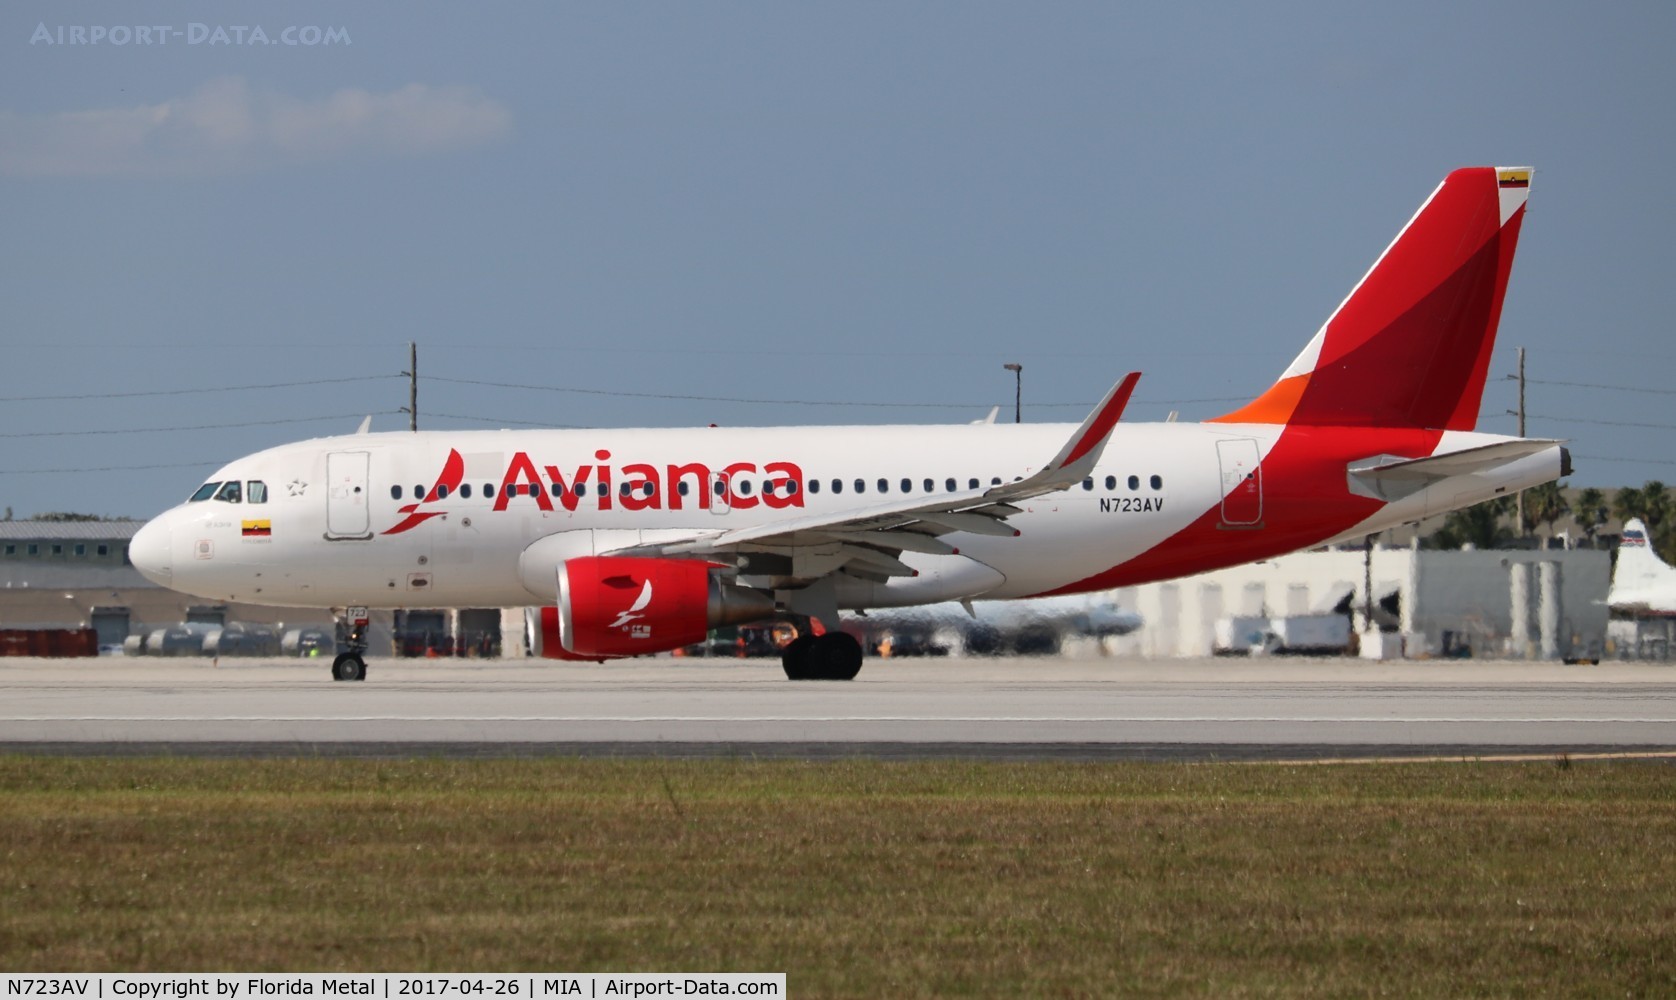 N723AV, 2014 Airbus A319-115 C/N 6167, Avianca